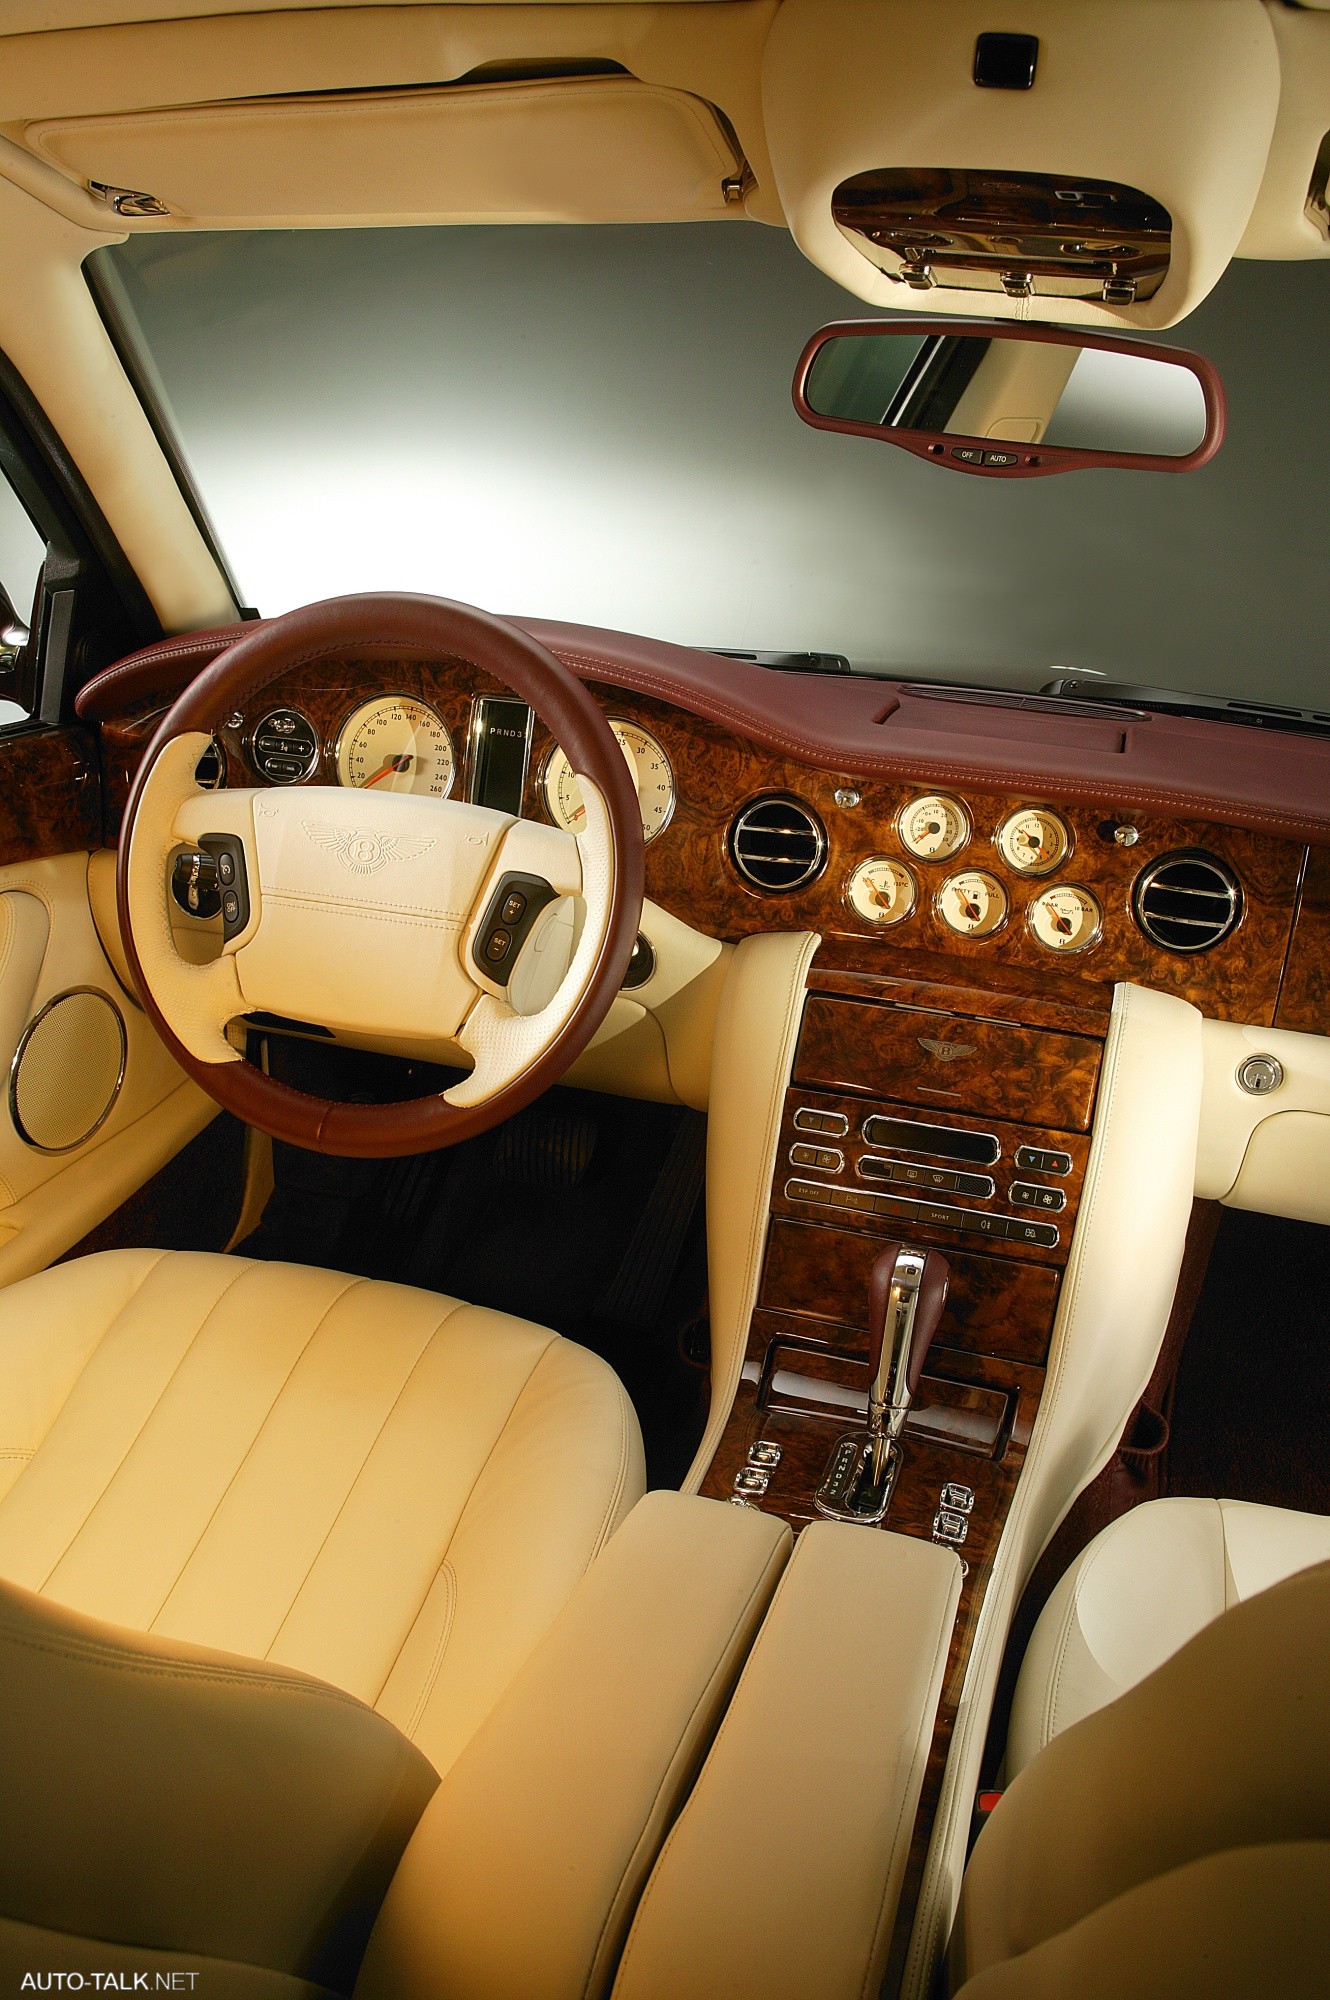 2008 Bentley Arnage